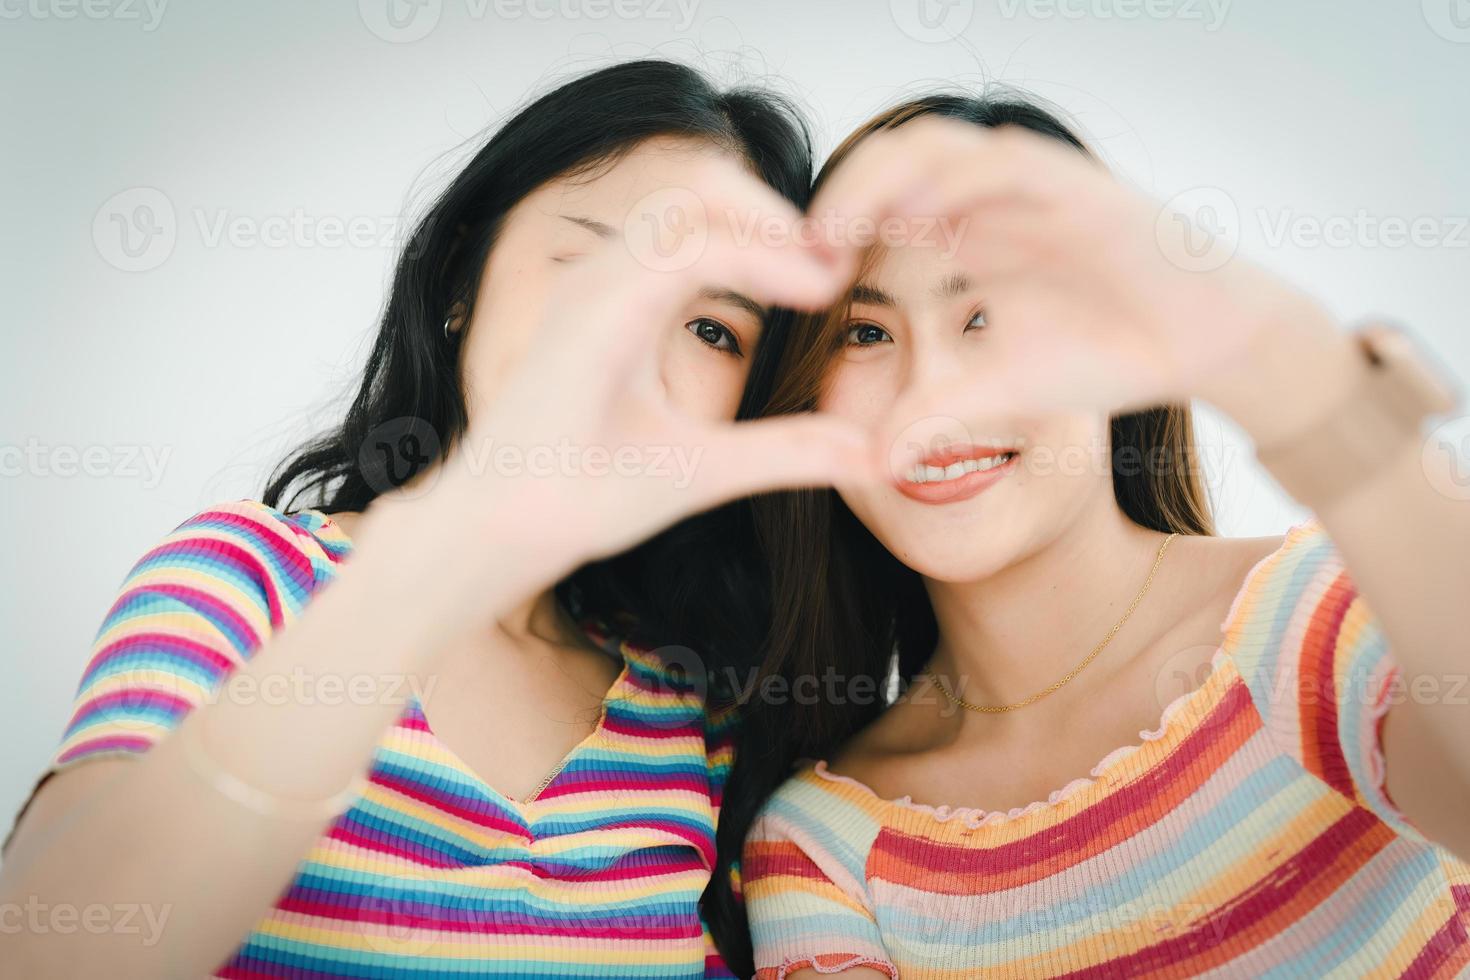 lgbtq, conceito lgbt, homossexualidade, retrato de duas mulheres asiáticas posando felizes juntos e mostrando amor um pelo outro enquanto estão juntos foto